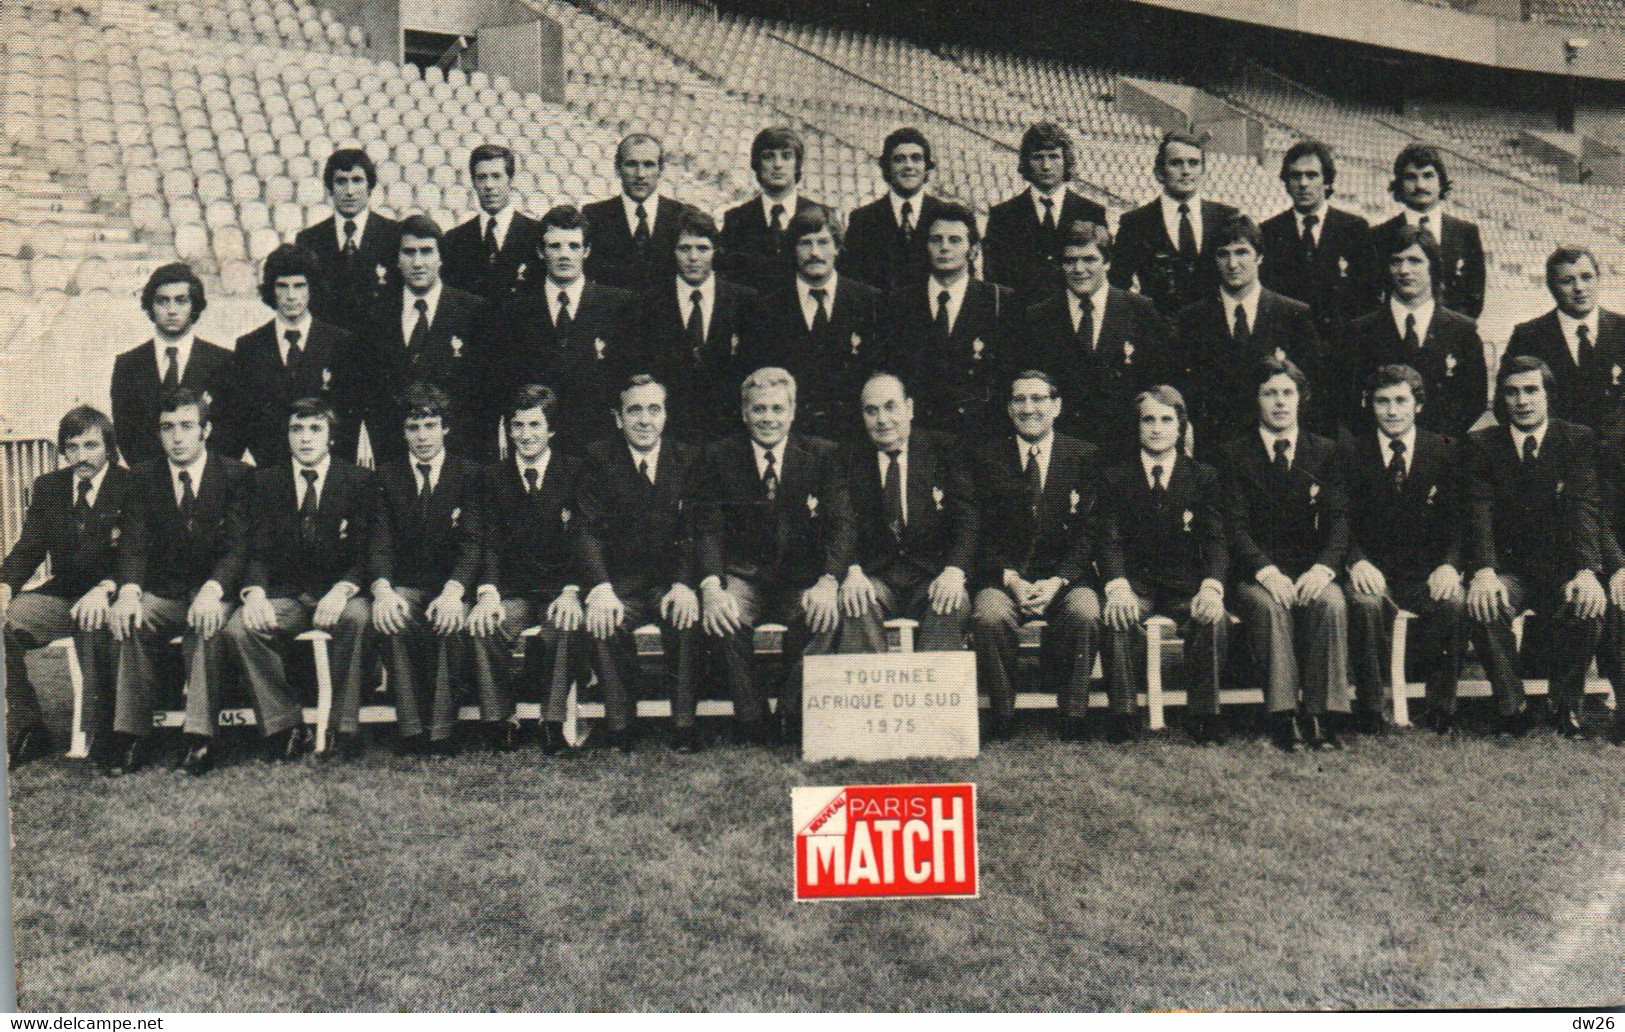 Photo De Groupe: Equipe De France De Rugby, Tournée Afrique Du Sud 1975 - Publicité Paris Match - Sporten